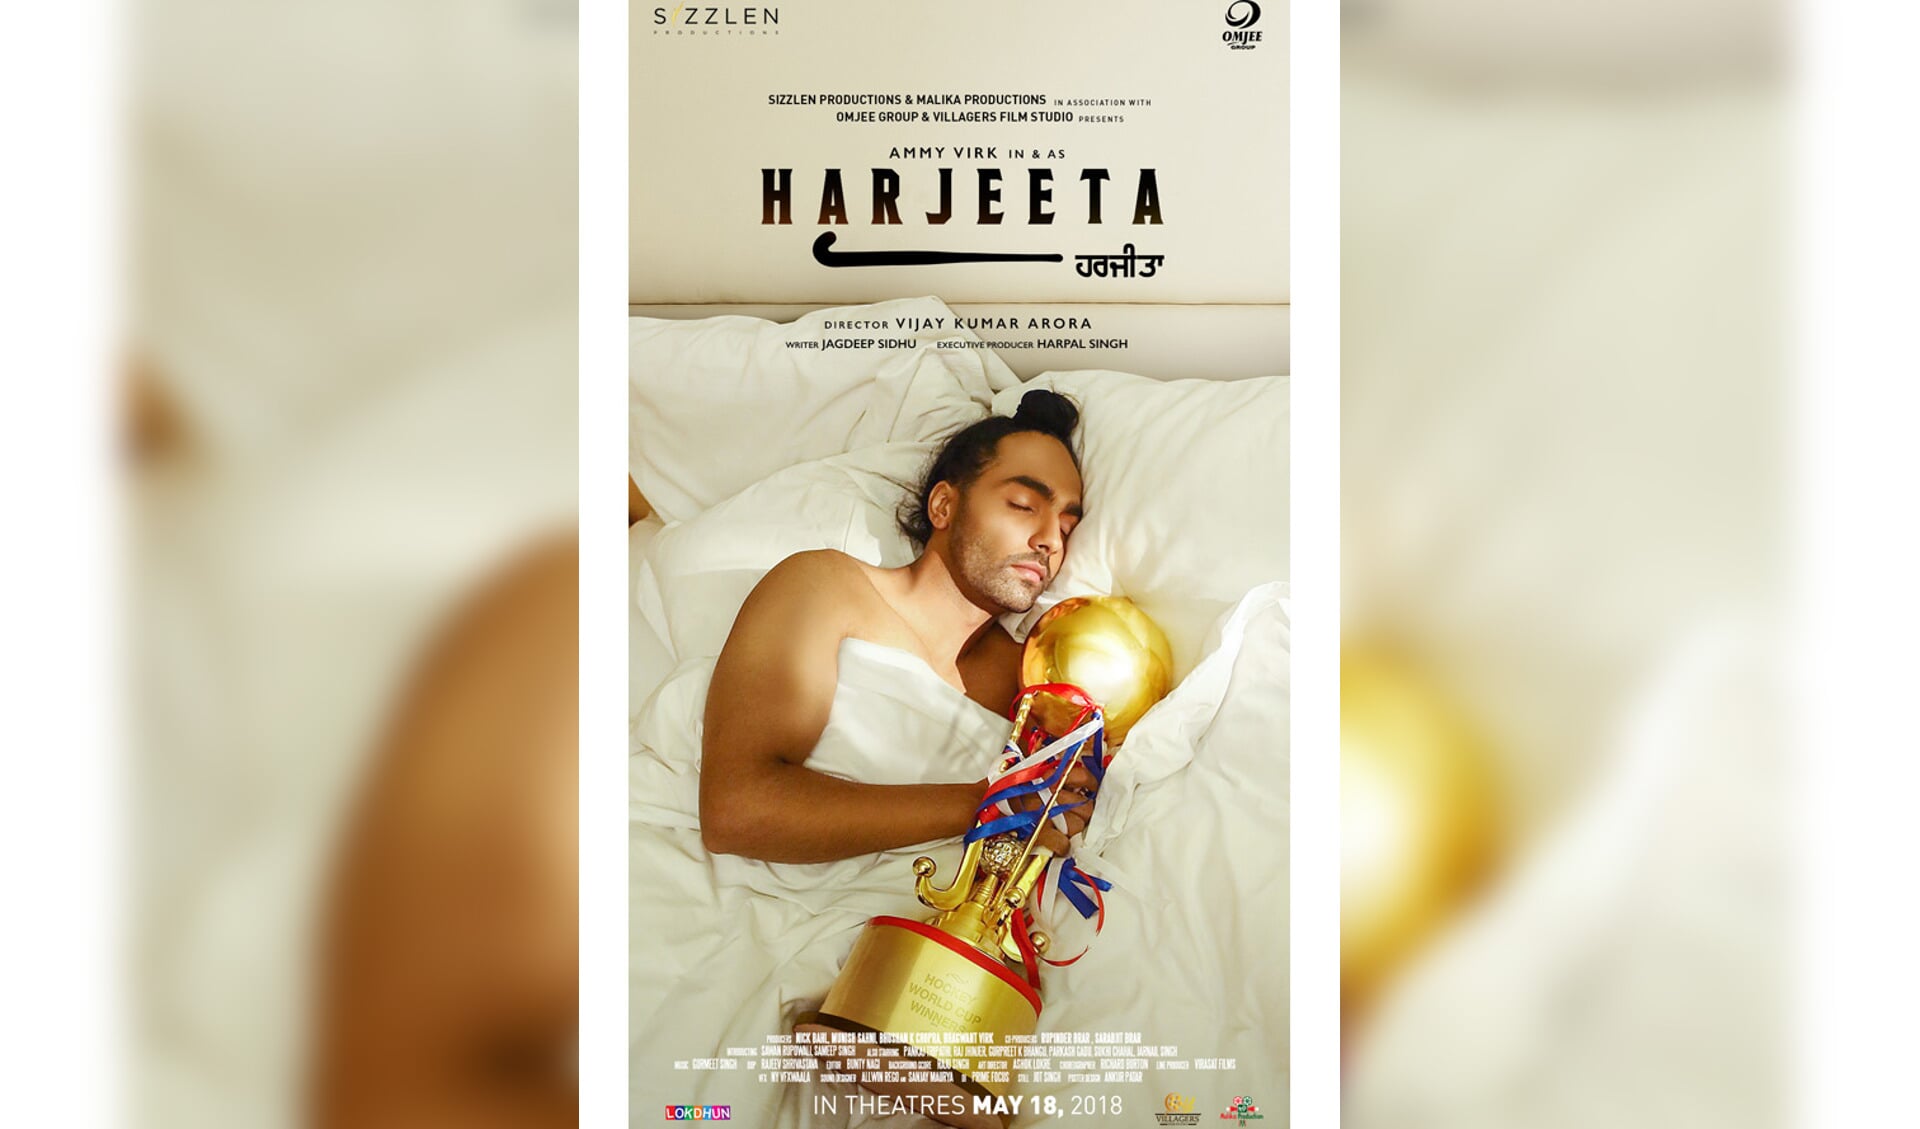 De poster van de film Harjeeta.